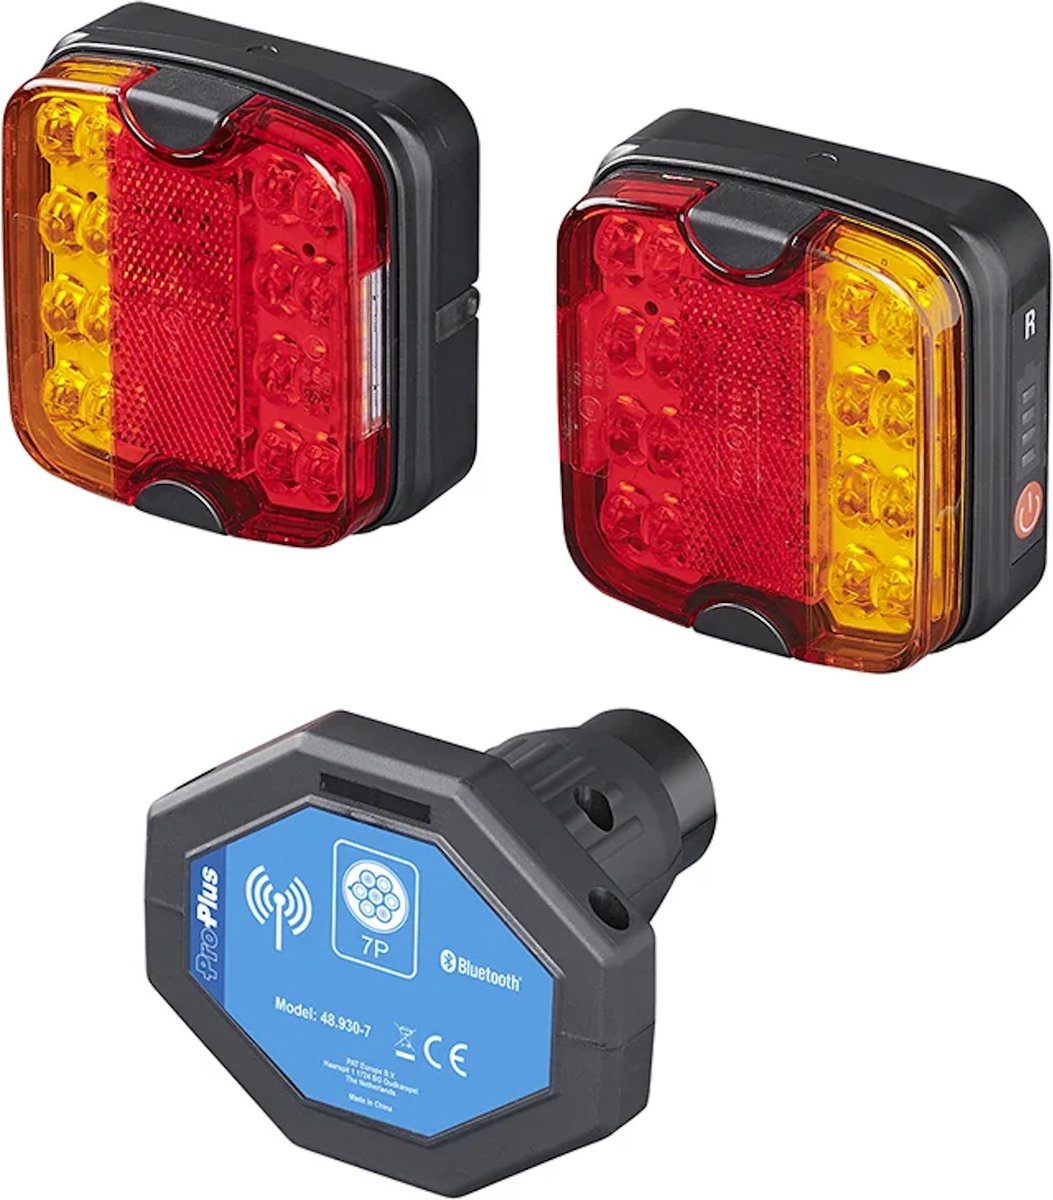 Pro Plus Draadloos LED Aanhangerverlichting Uitgerust met Magneten en 7-Polige Stekker